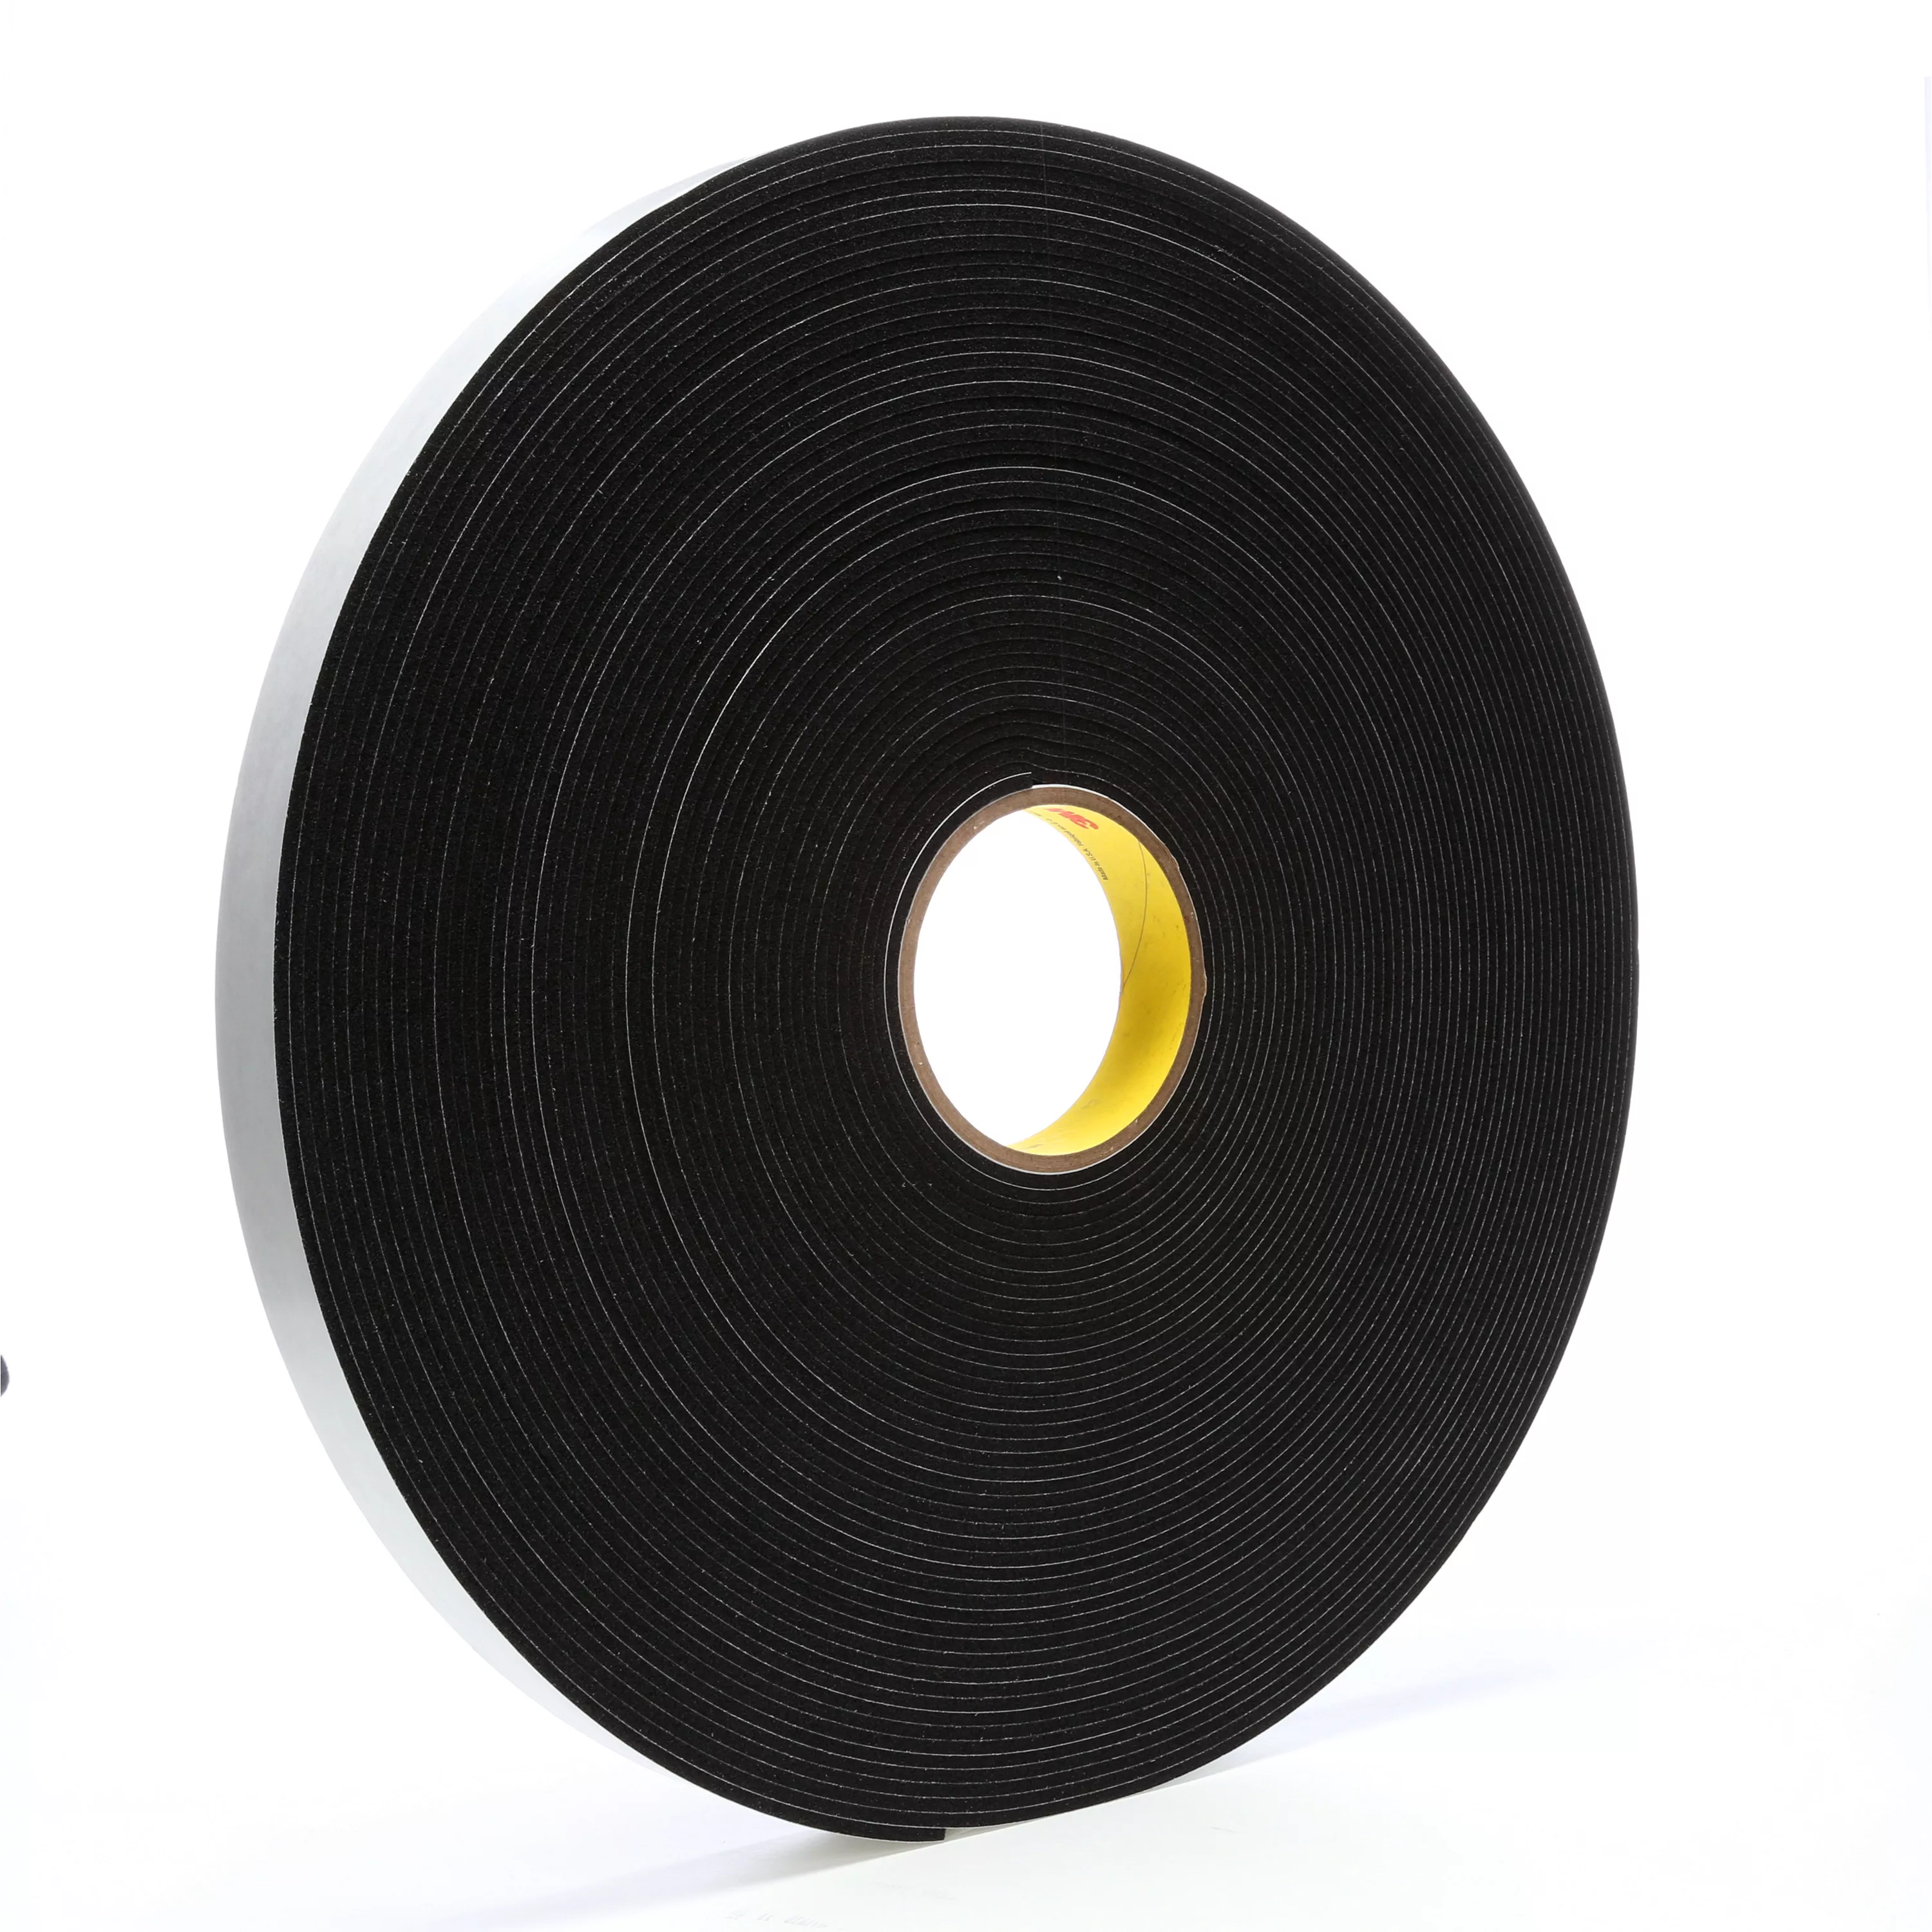 3M™ Vinyl Foam Tape 4508, Black, 1 in x 36 yd, 125 mil, 9 Roll/Case